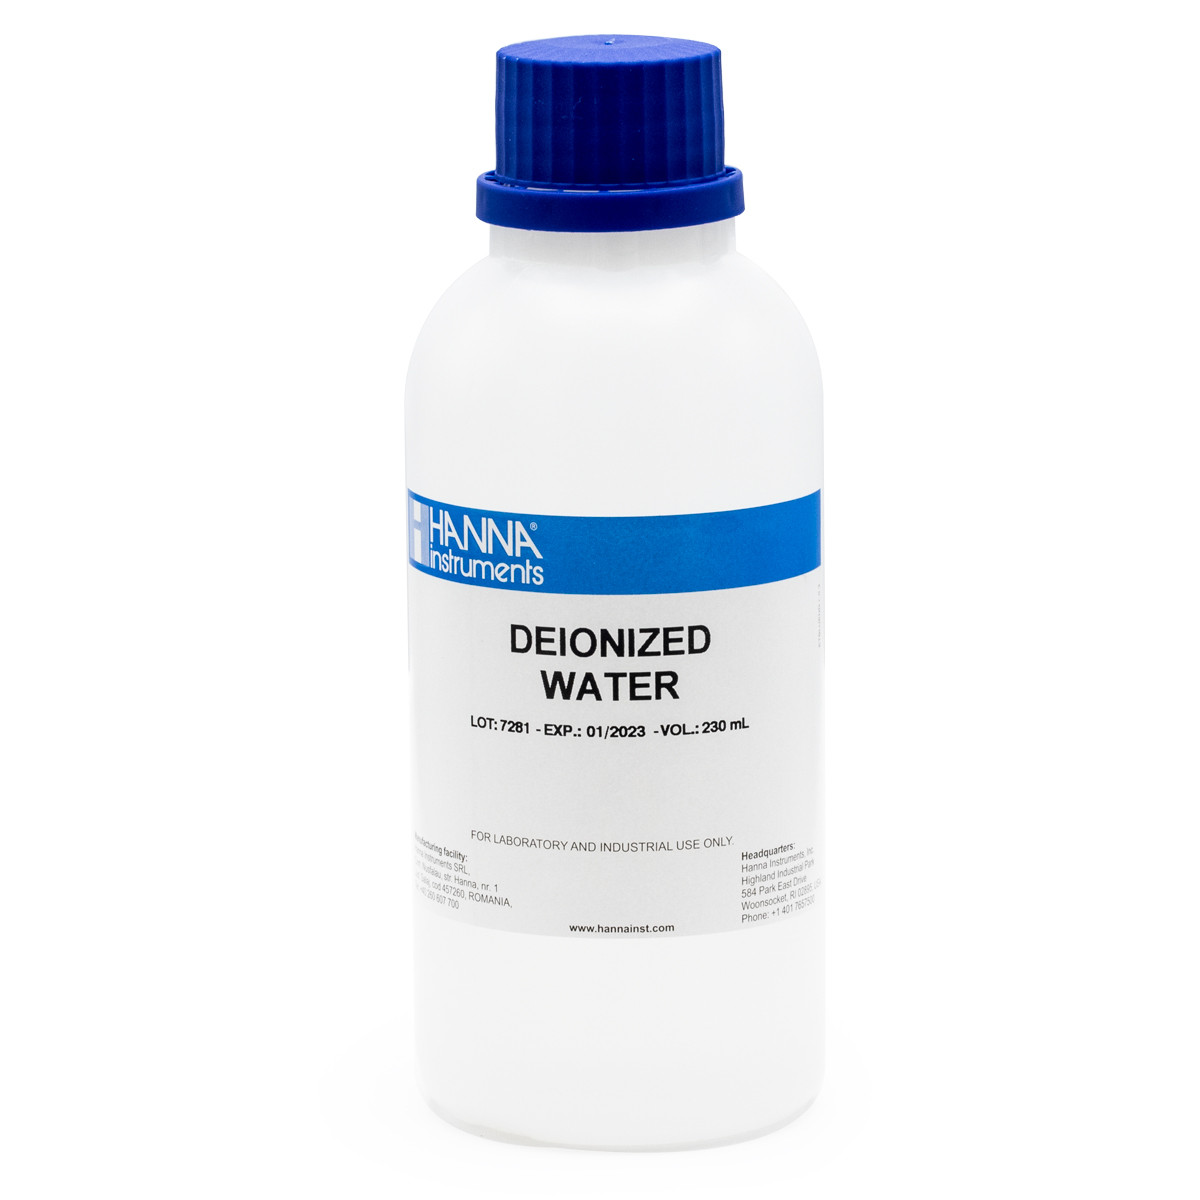 Deionized Water 16 fl oz